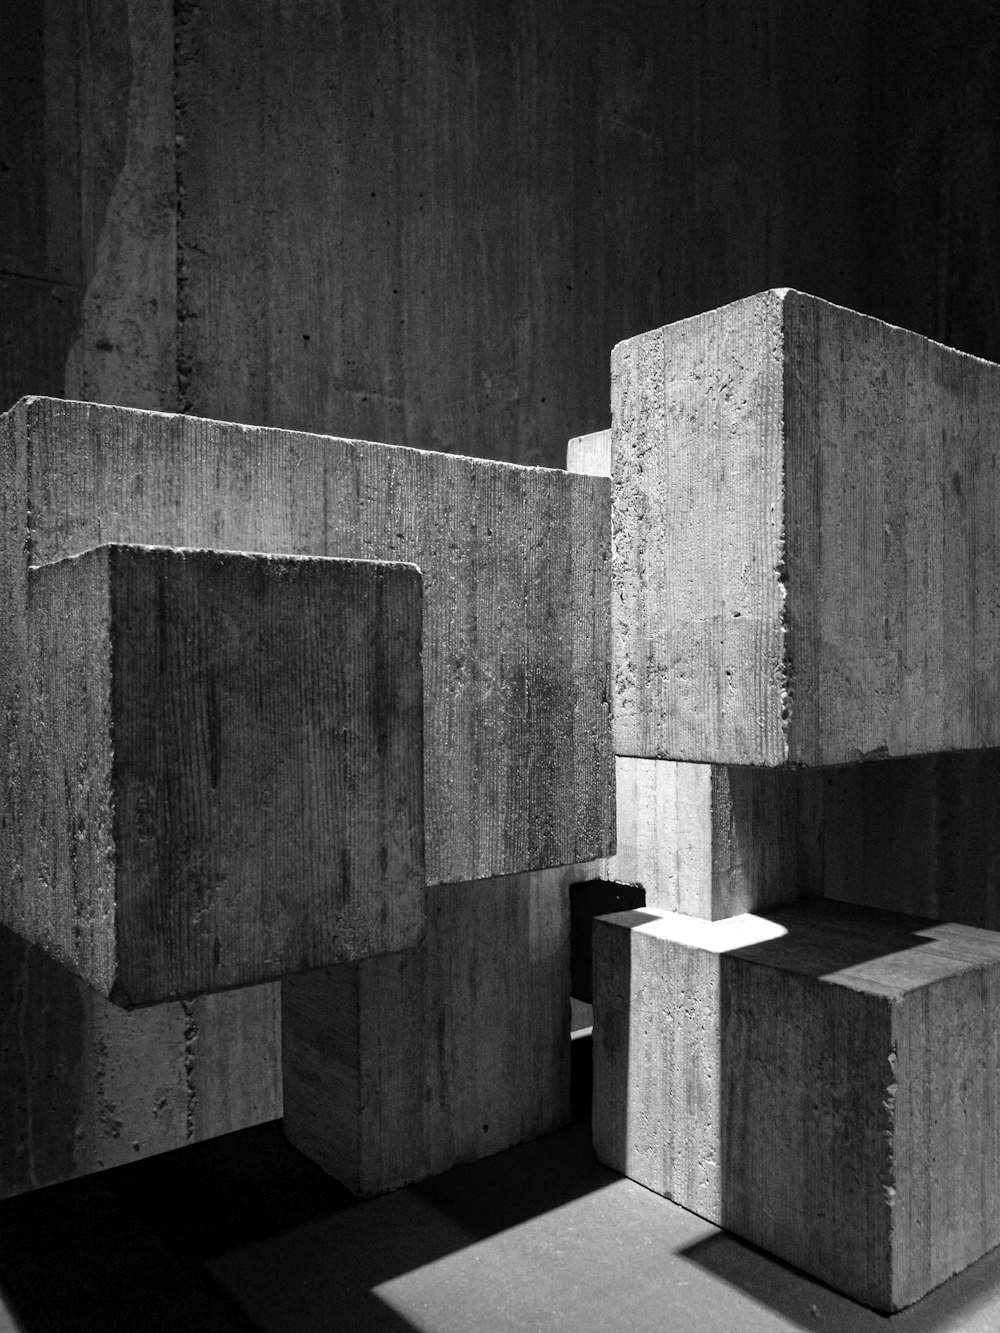 fotografía en escala de grises de bloques de hormigón